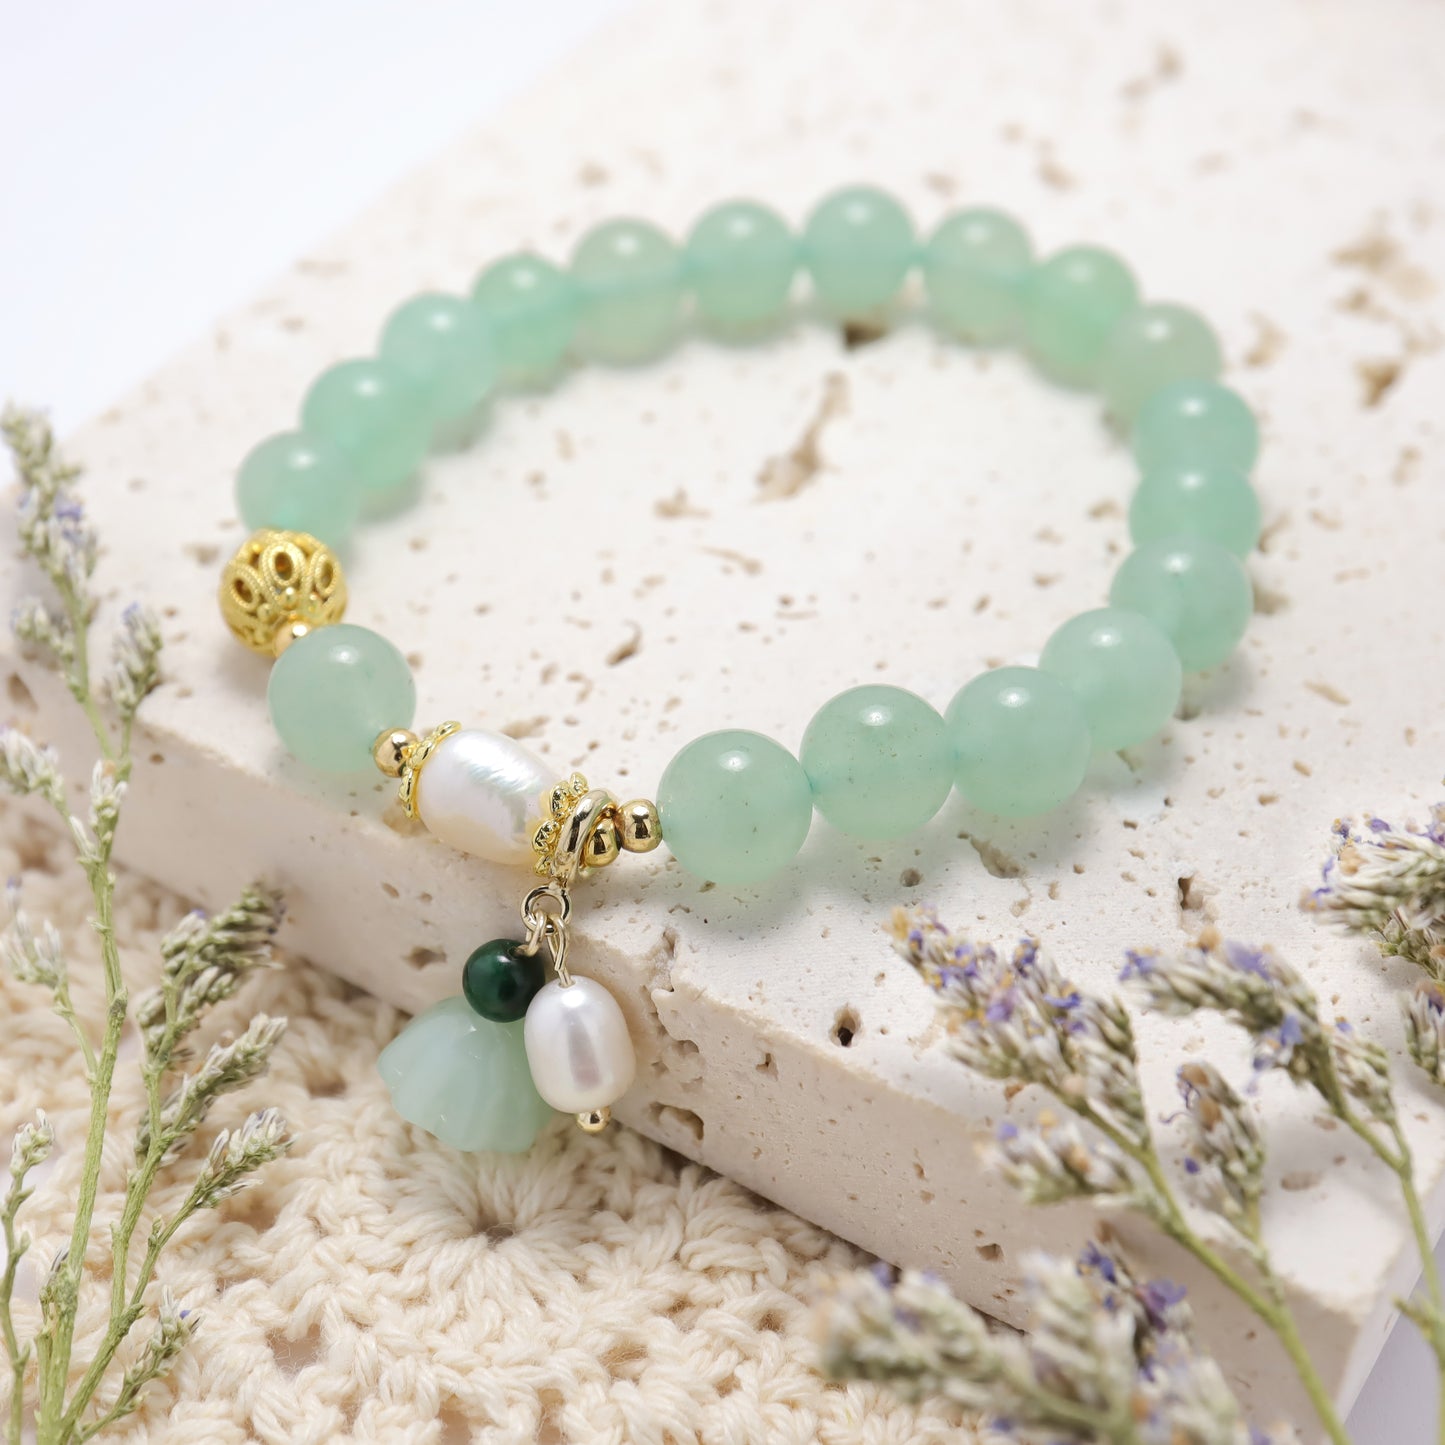 Purity & Love - Aventurine Lotus Seedpod Gemstones Freshwater Pearl Bracelet